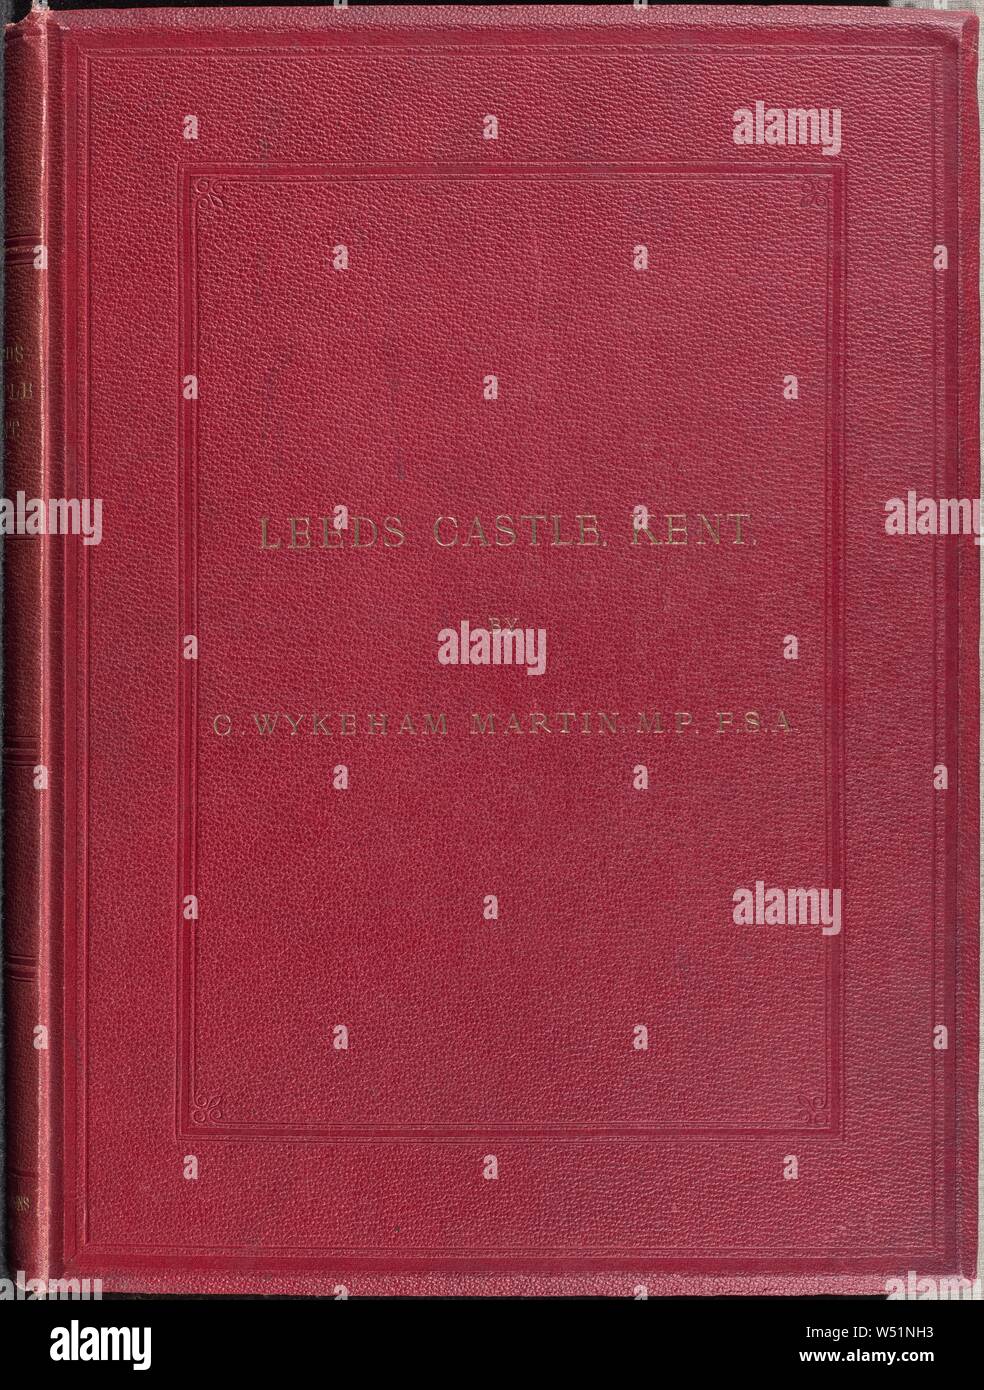 La historia y descripción de Leeds Castle, Kent, Charles Wykeman Martin, J. Cruttenden (British, active 1850s - 1860S), Westminster, Inglaterra, 1869, albúmina imprimir plata, Cerrado: 39 × 29 × 3 cm (15 3/8 × 11 × 1 7/16 3/16 pulg. Foto de stock